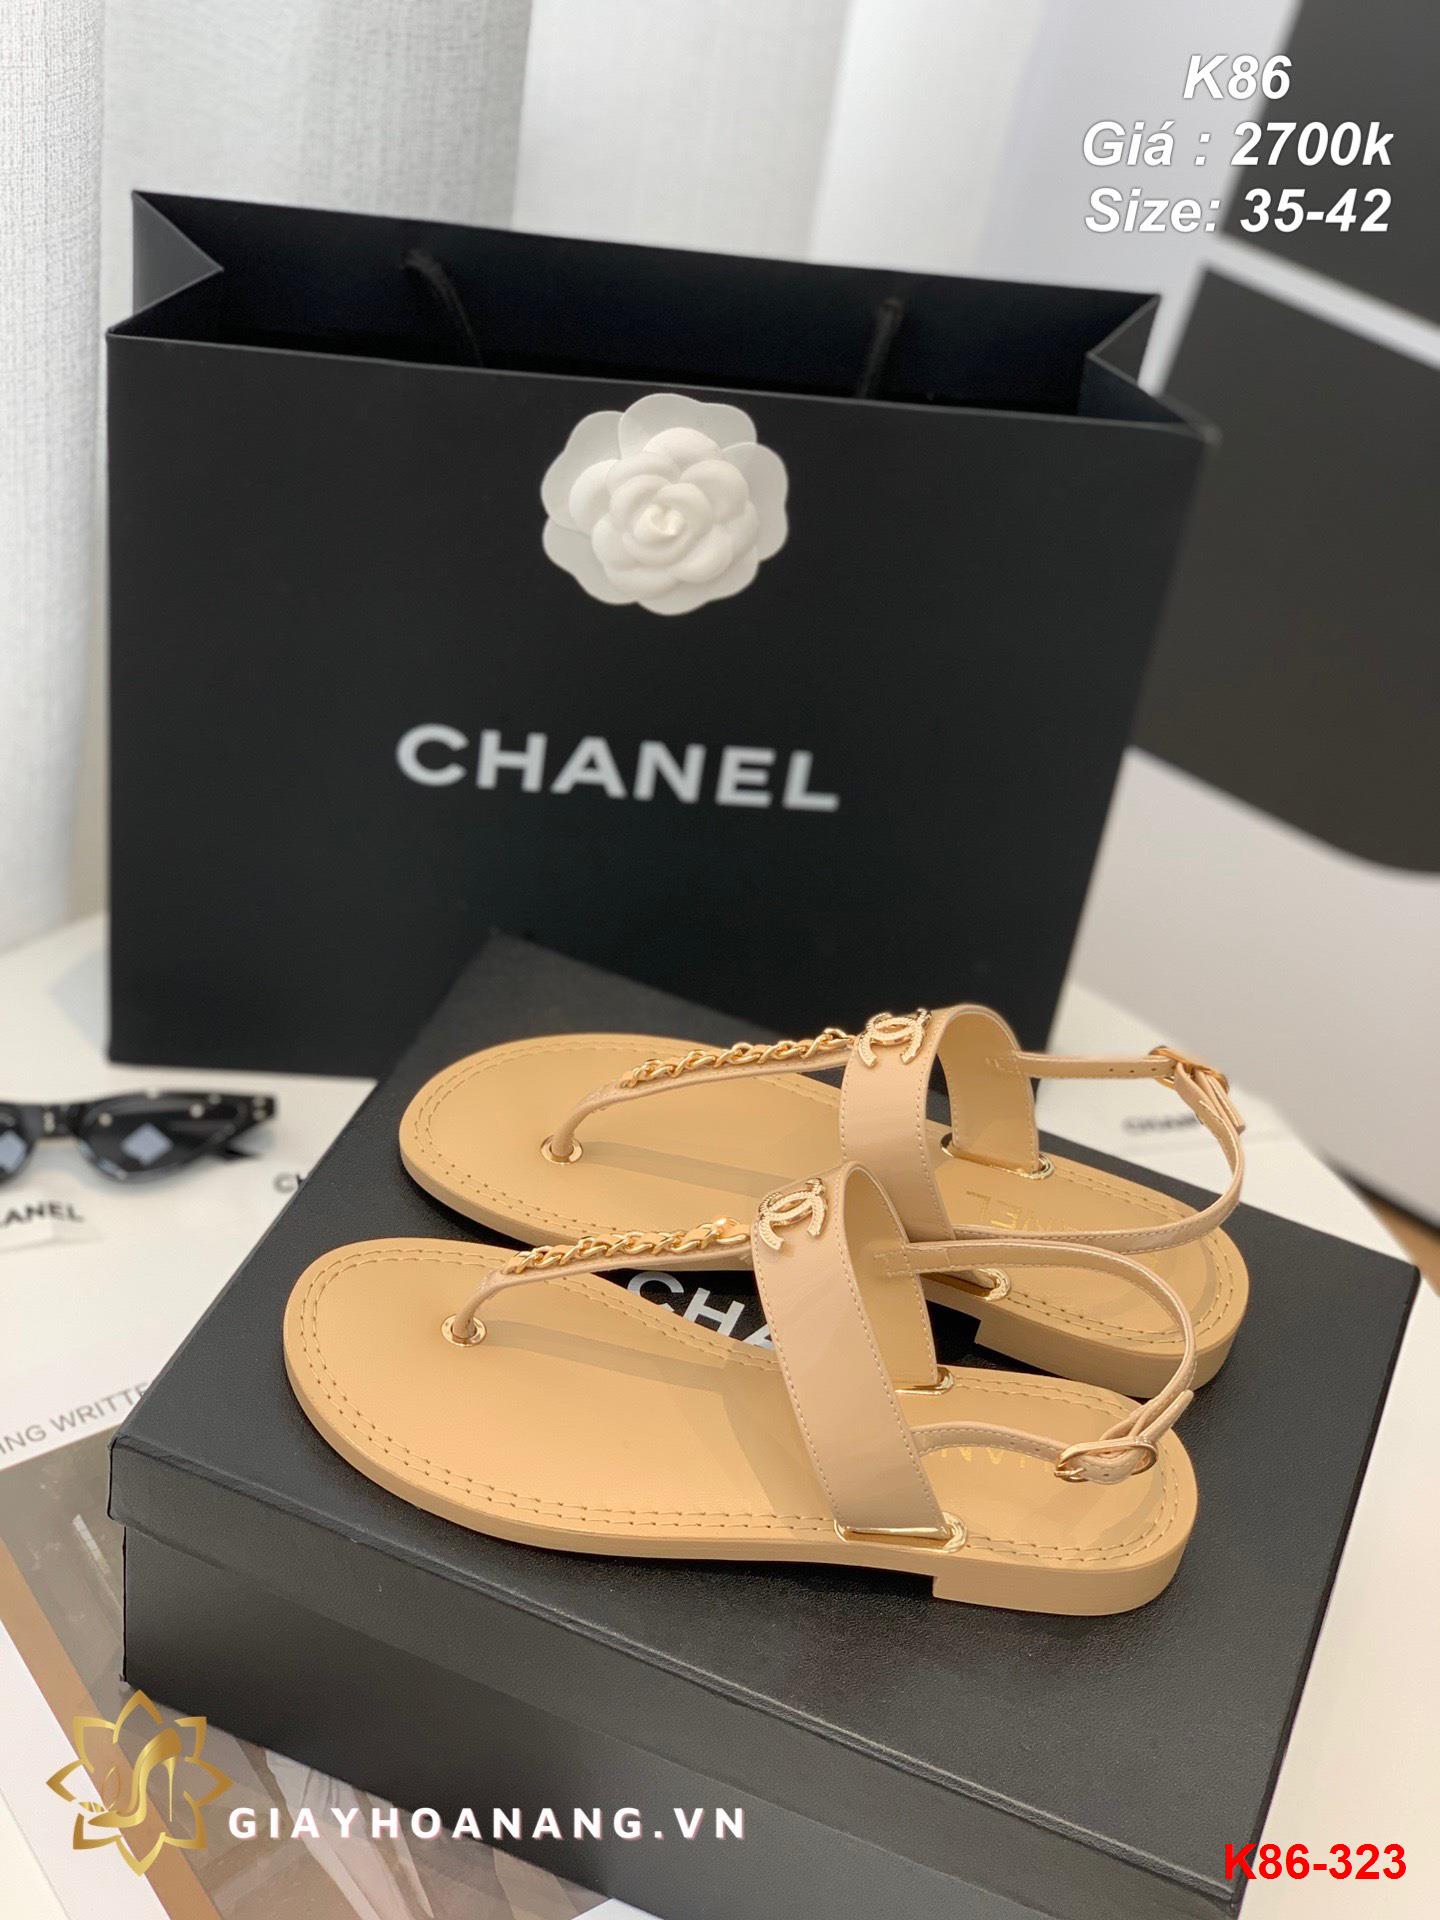 K86-323 Chanel sandal siêu cấp